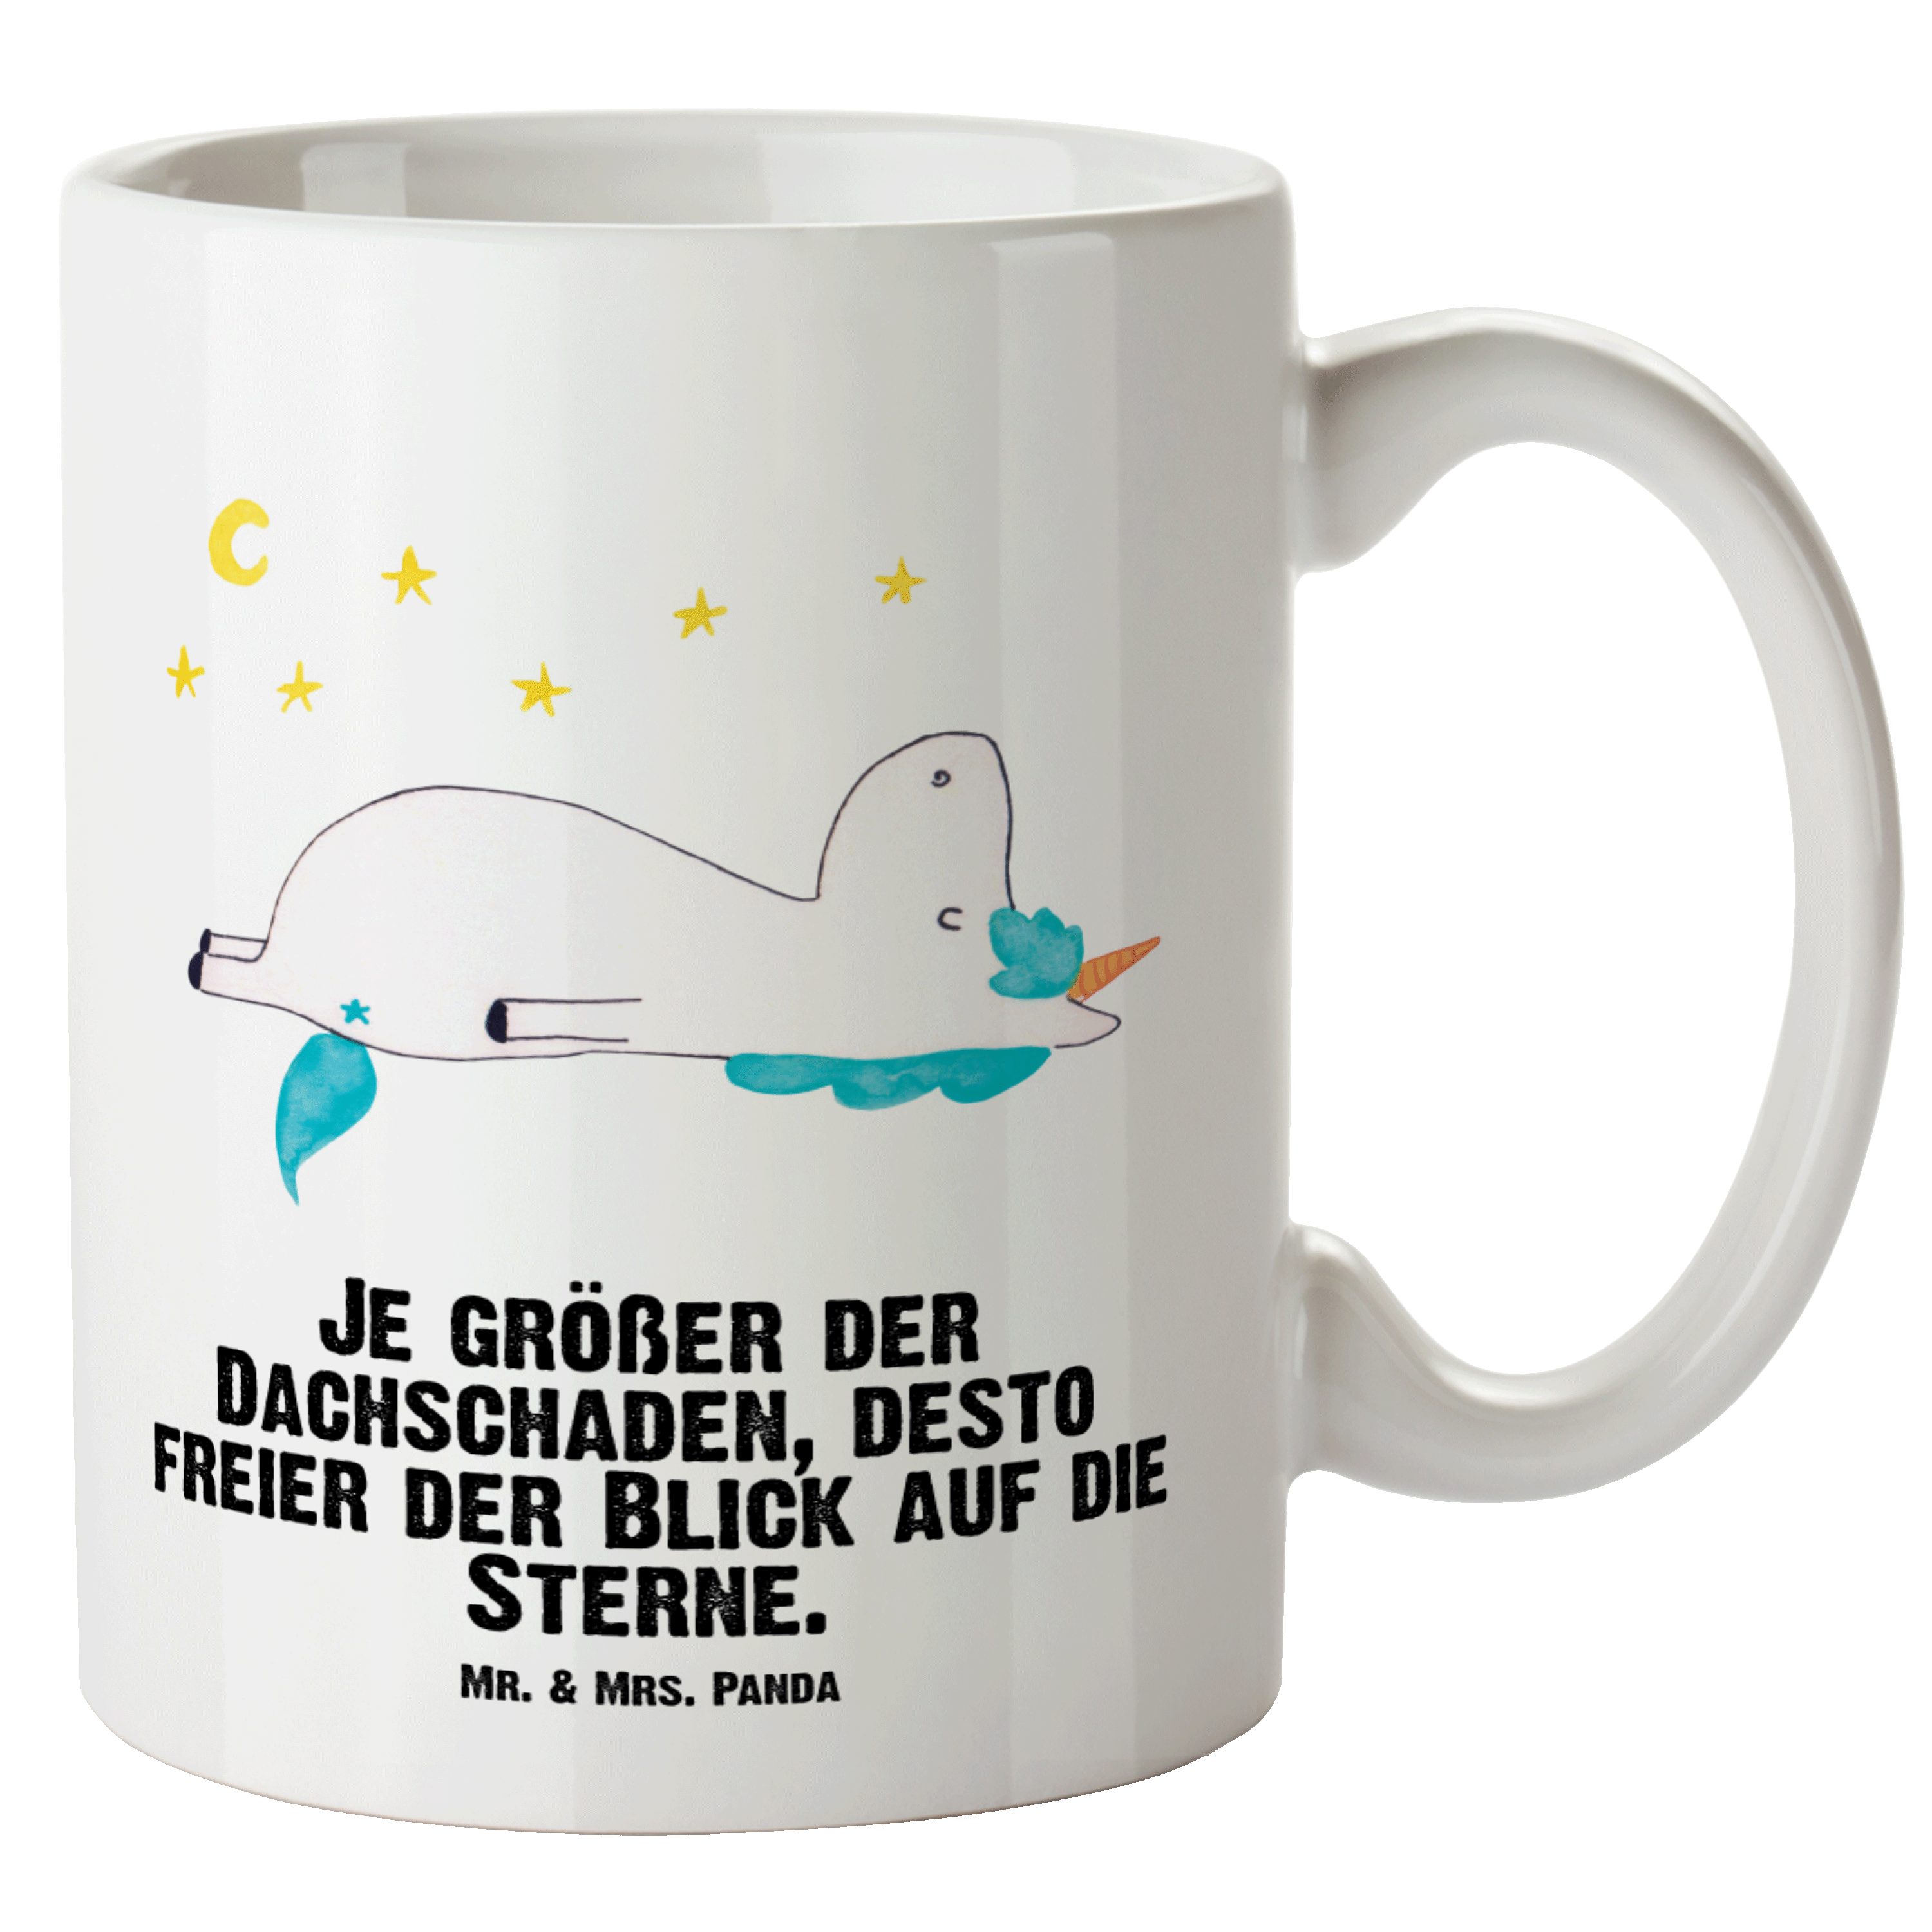 Mr. & Mrs. Panda Tasse Einhorn Sternenhimmel - Weiß - Geschenk, Grosse Kaffeetasse, Unicorn, XL Tasse Keramik